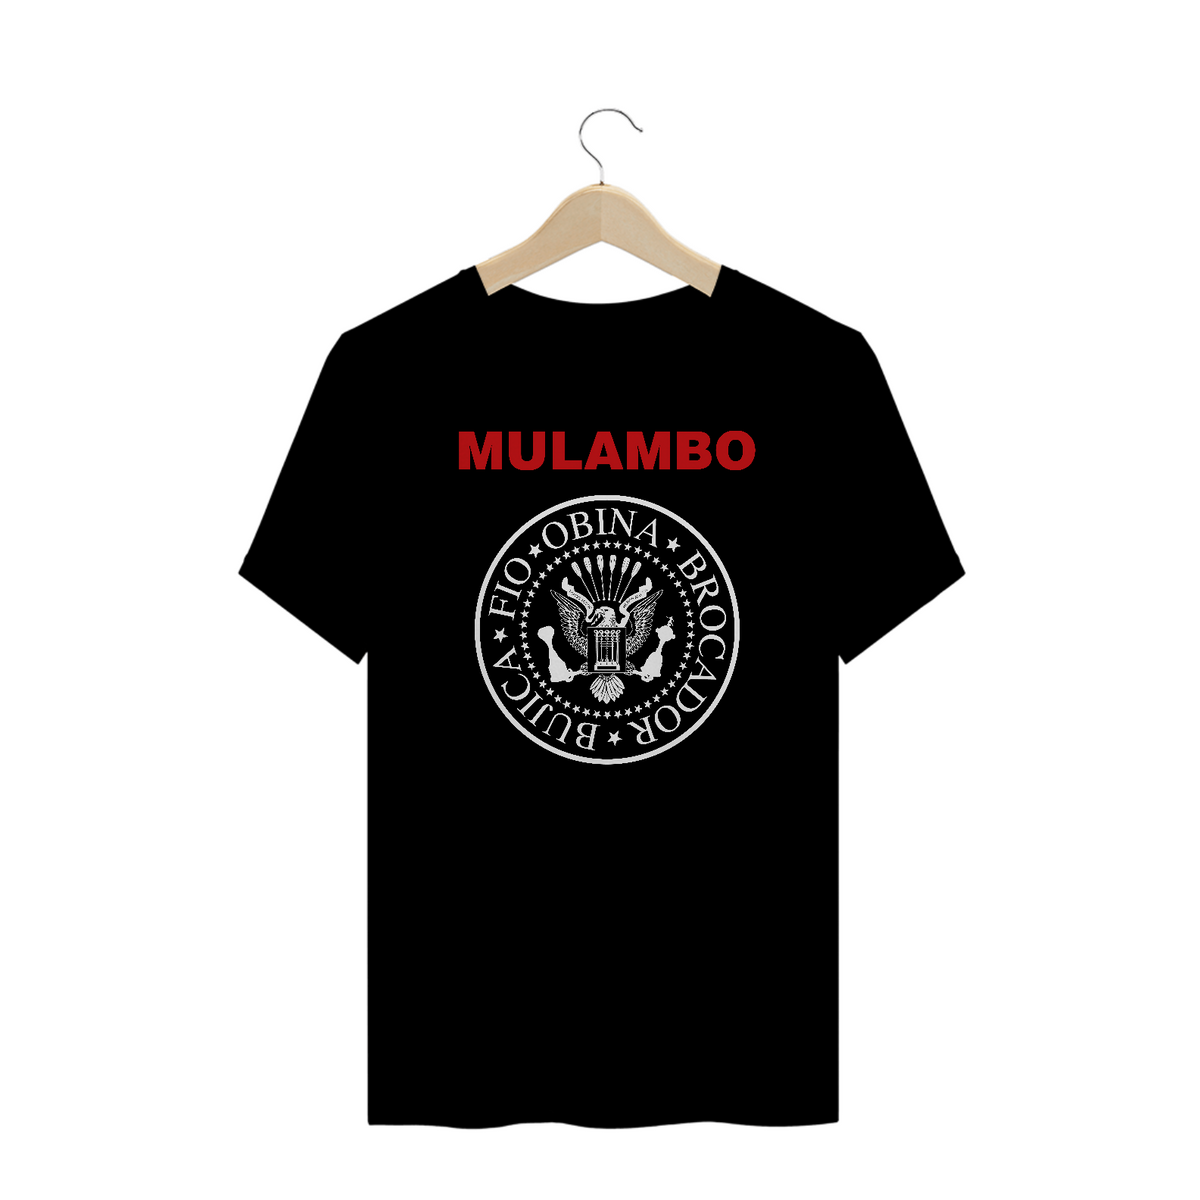 Nome do produto: Mulambo - Plus size - Preto